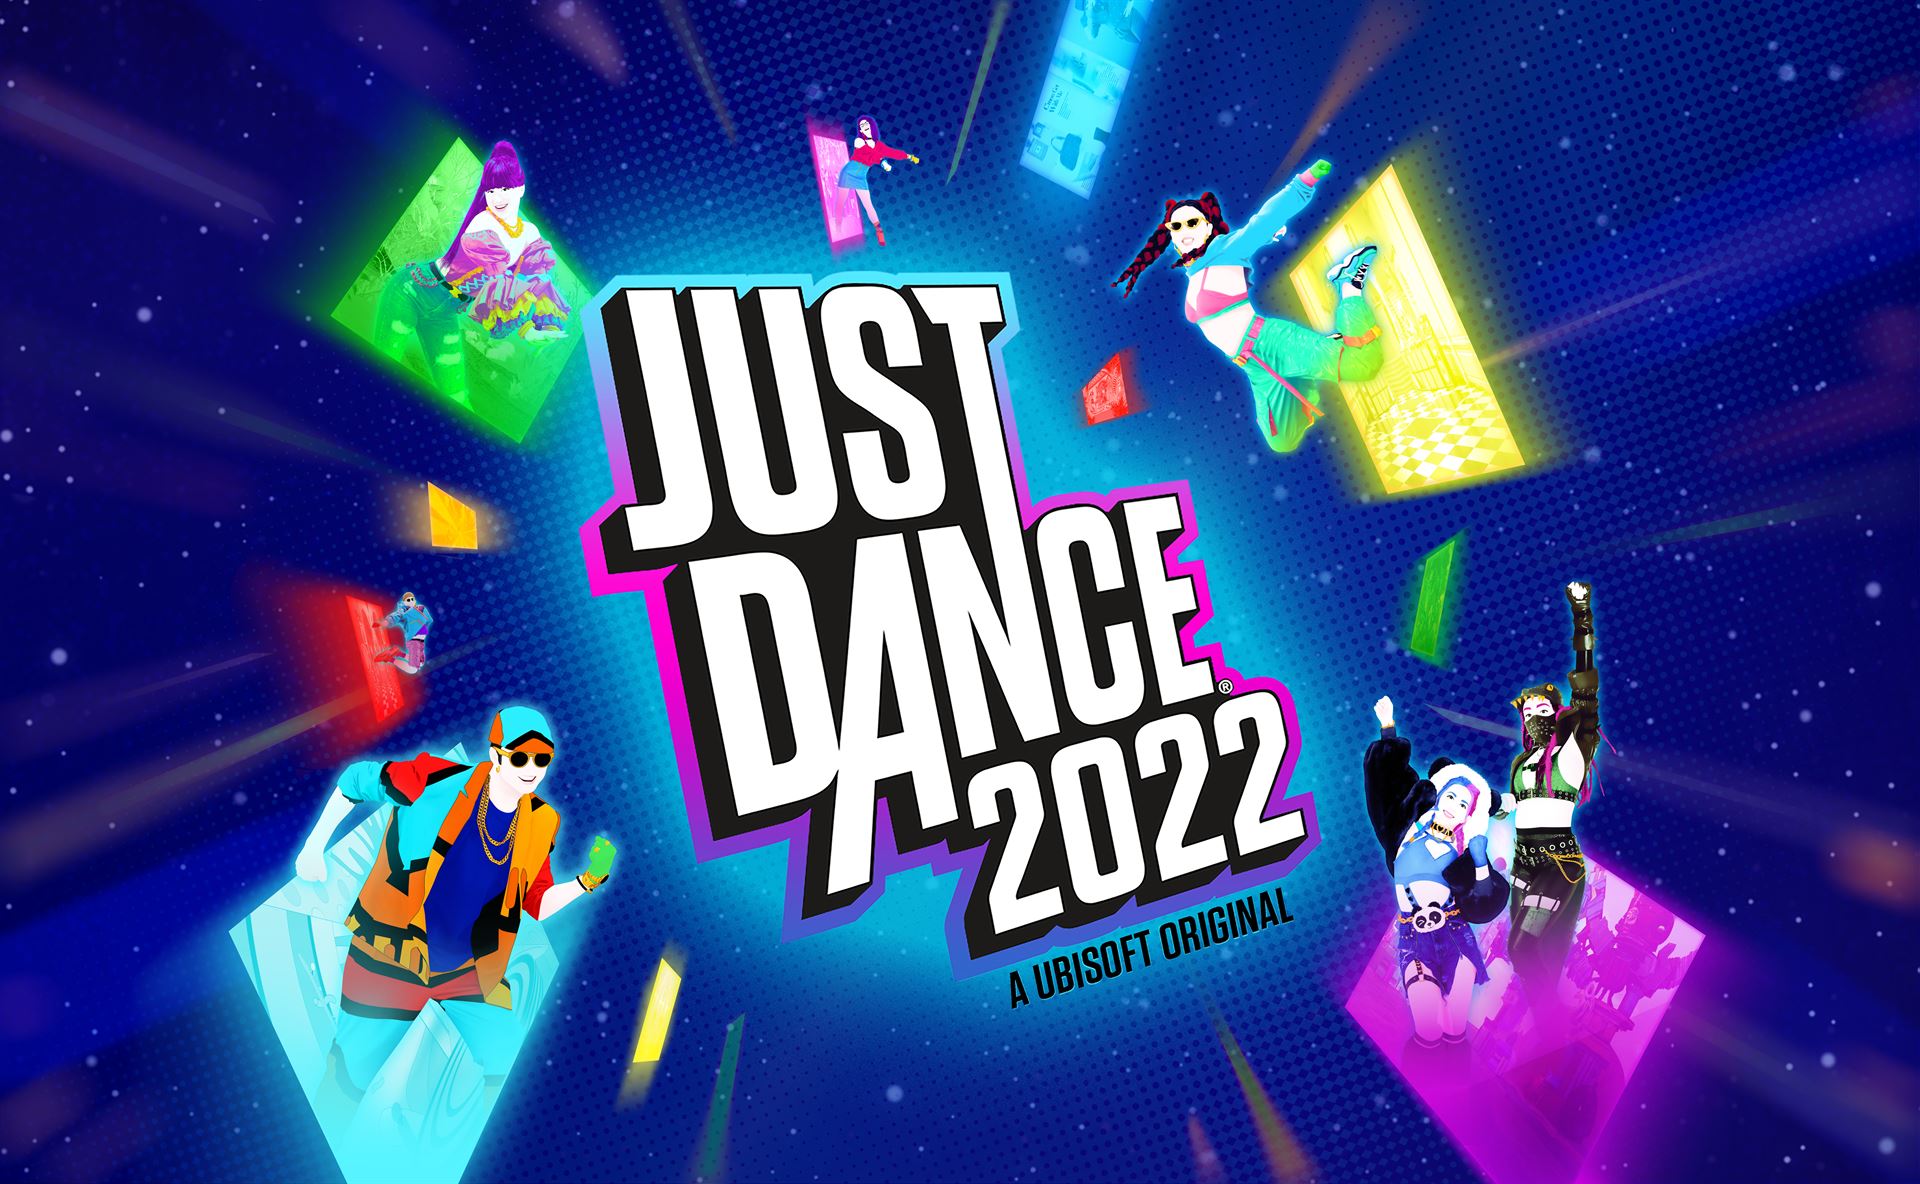 JUST DANCE 2022 เปิดโอกาสให้ทุกคนใน TIKTOK พบกับสิ่งใหม่ กับแชลเลนจ์ JUST DANCE IT OUT เริ่มแล้ววันนี้!